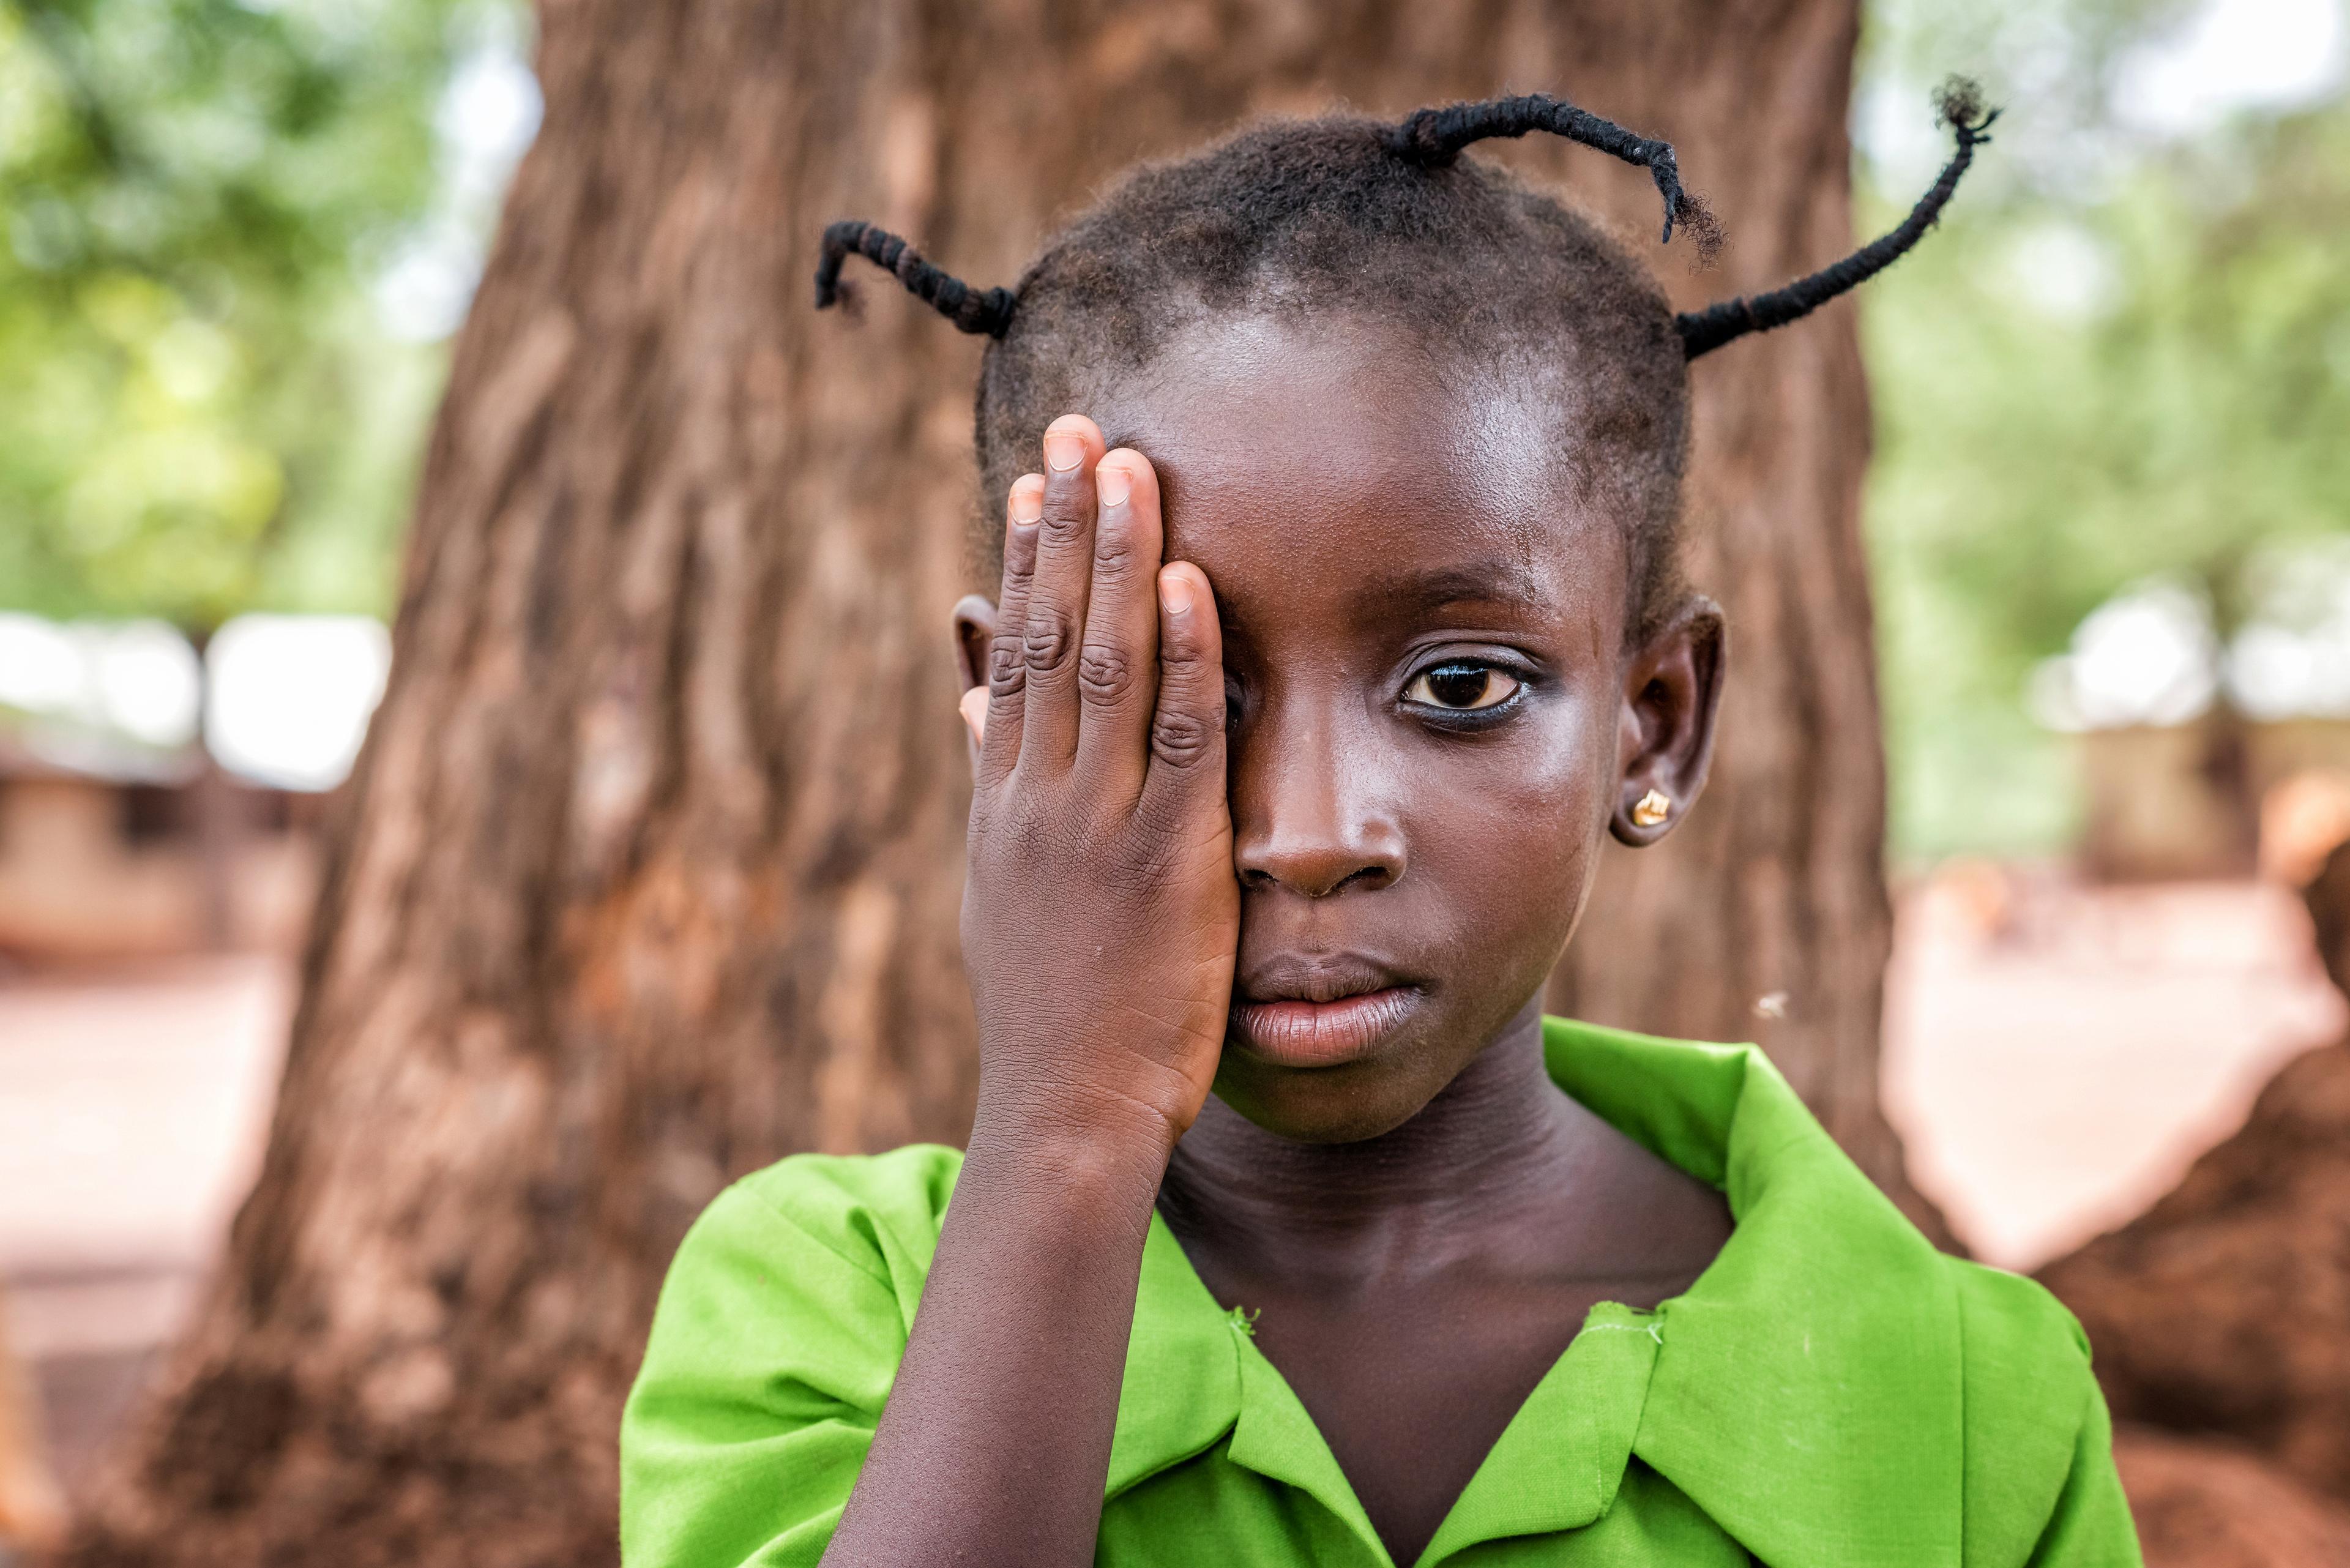 Asana, six ans, passe un test oculaire dans une école près de Tamale. Elle se tient devant un tronc d'arbre imposant.